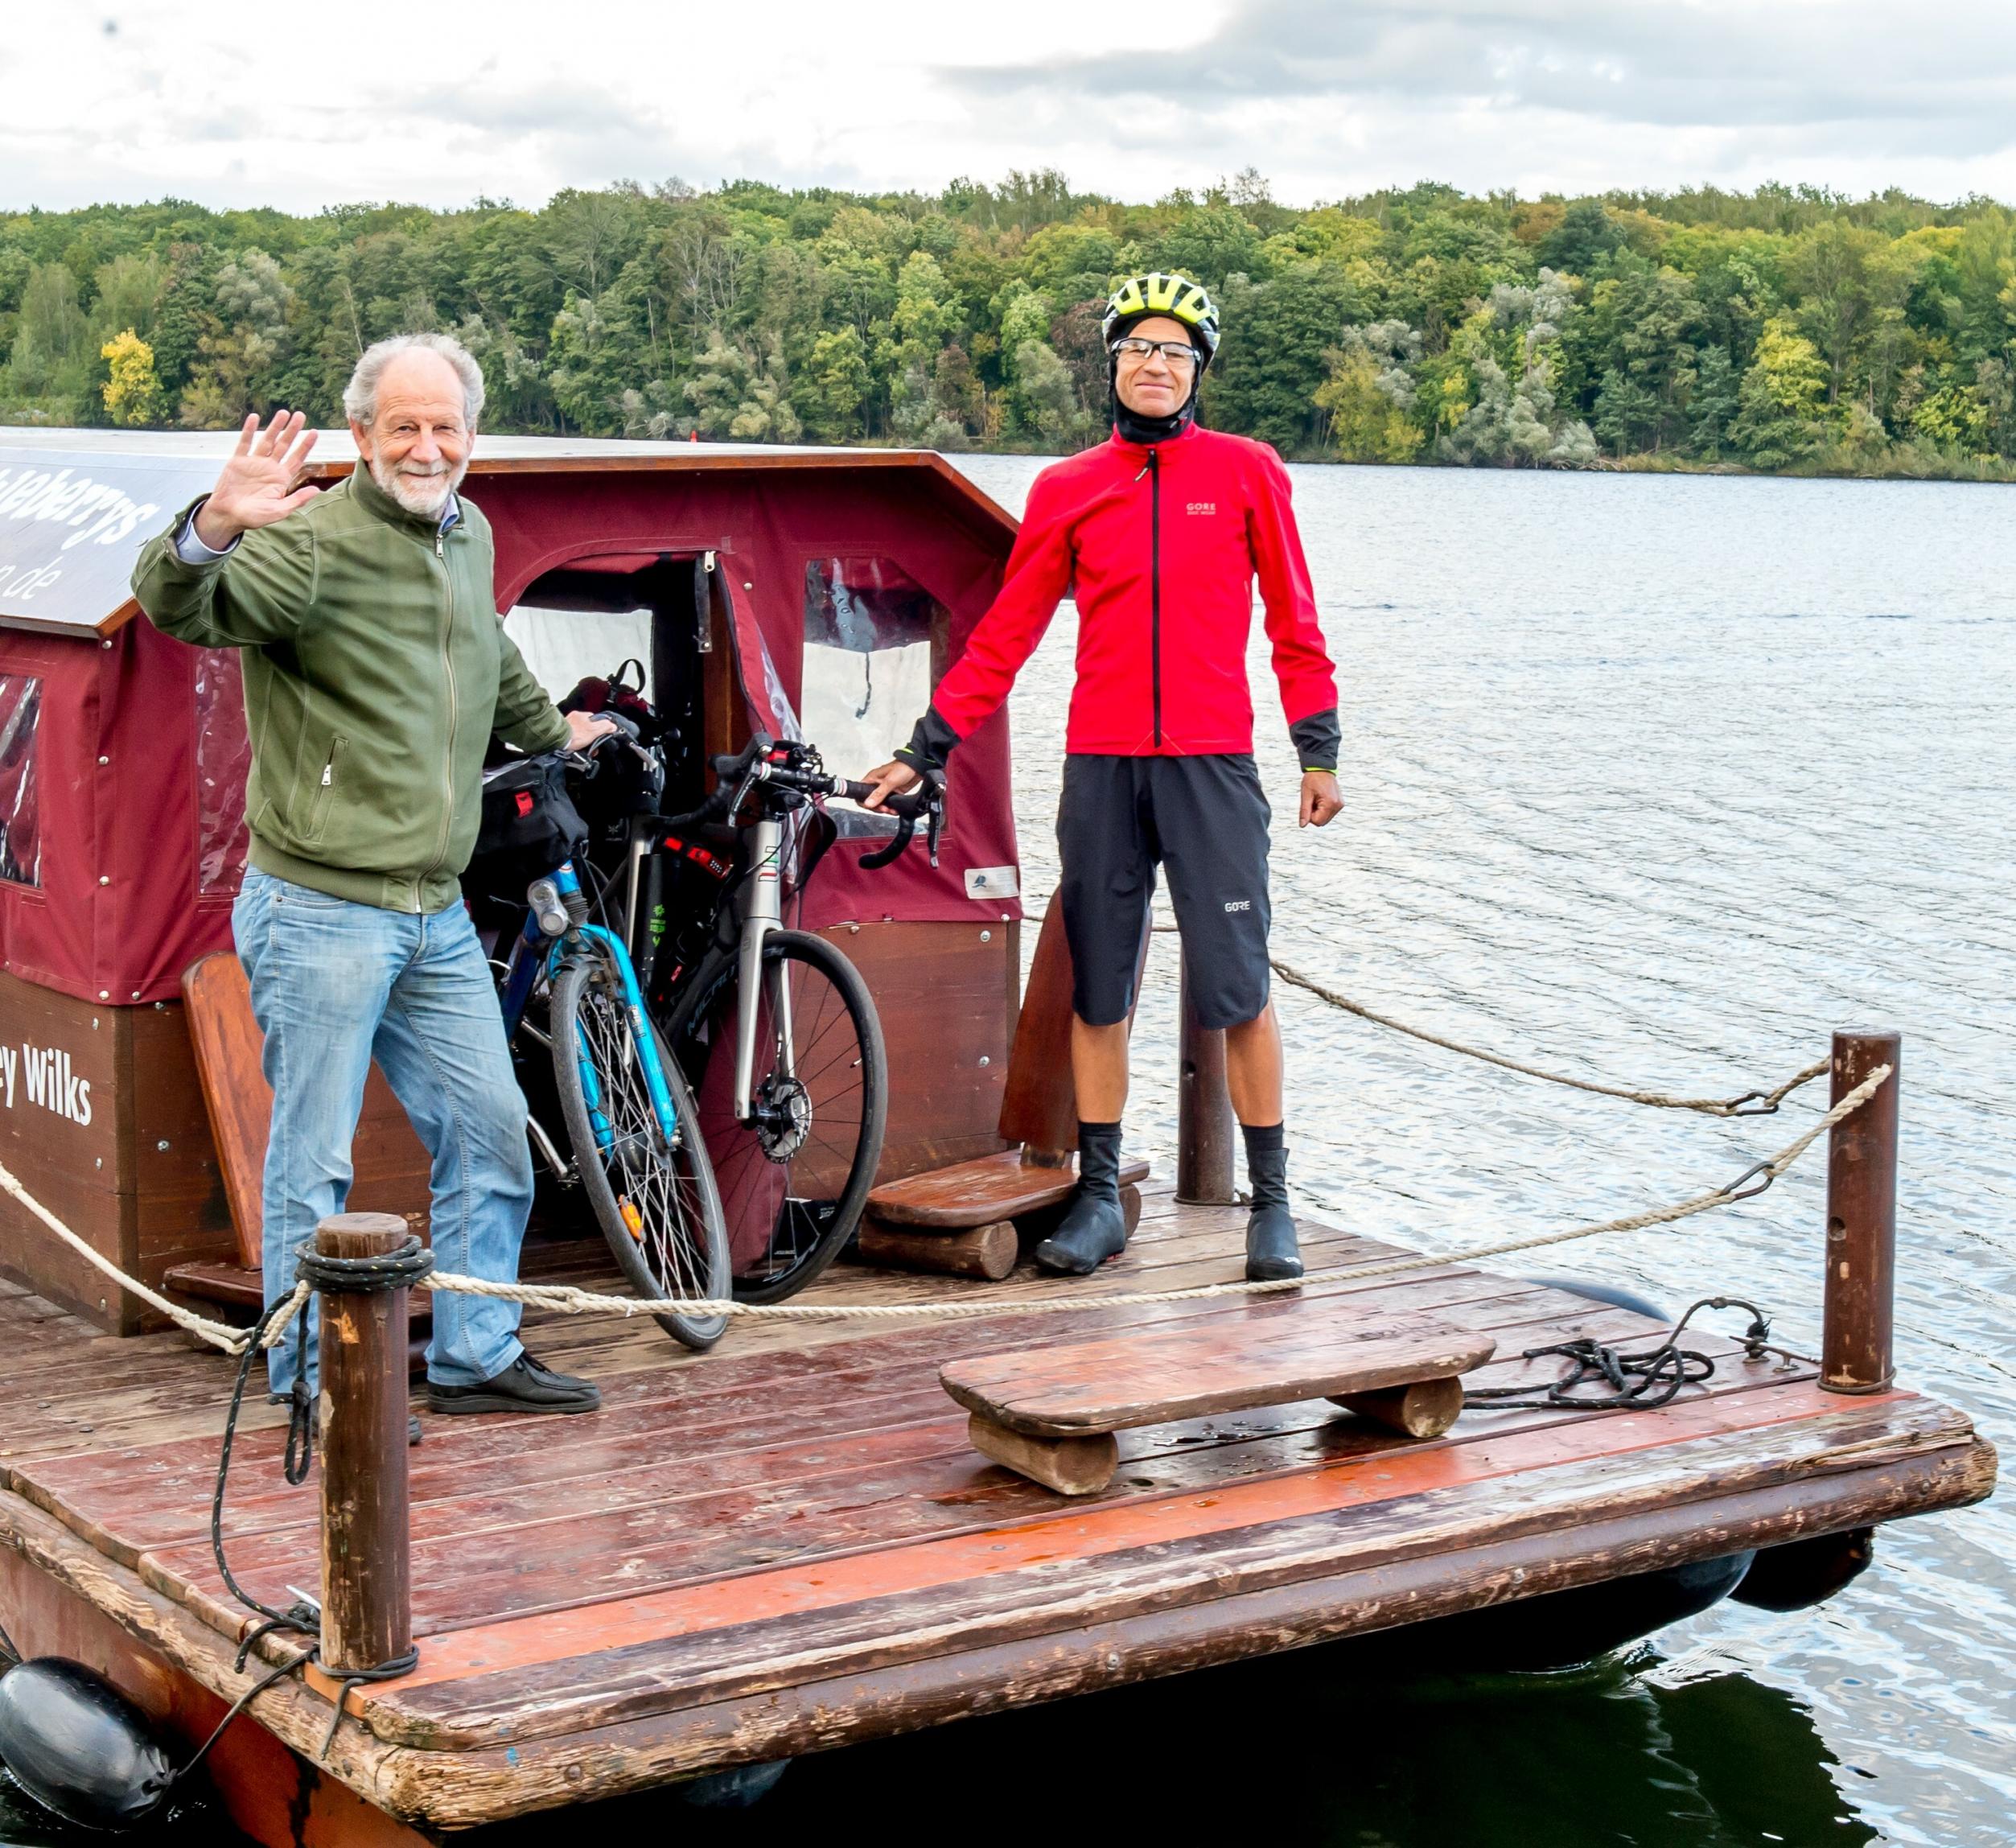 Die beiden Männer halten mit jeweils einer Hand ihr Fahrrad fest und stehen auf dunklen Holzplanken eines Floßes. Im Hintergrund ist der Jungfernsee und der Herbstwald des Sacrower Nordufers zu sehen.